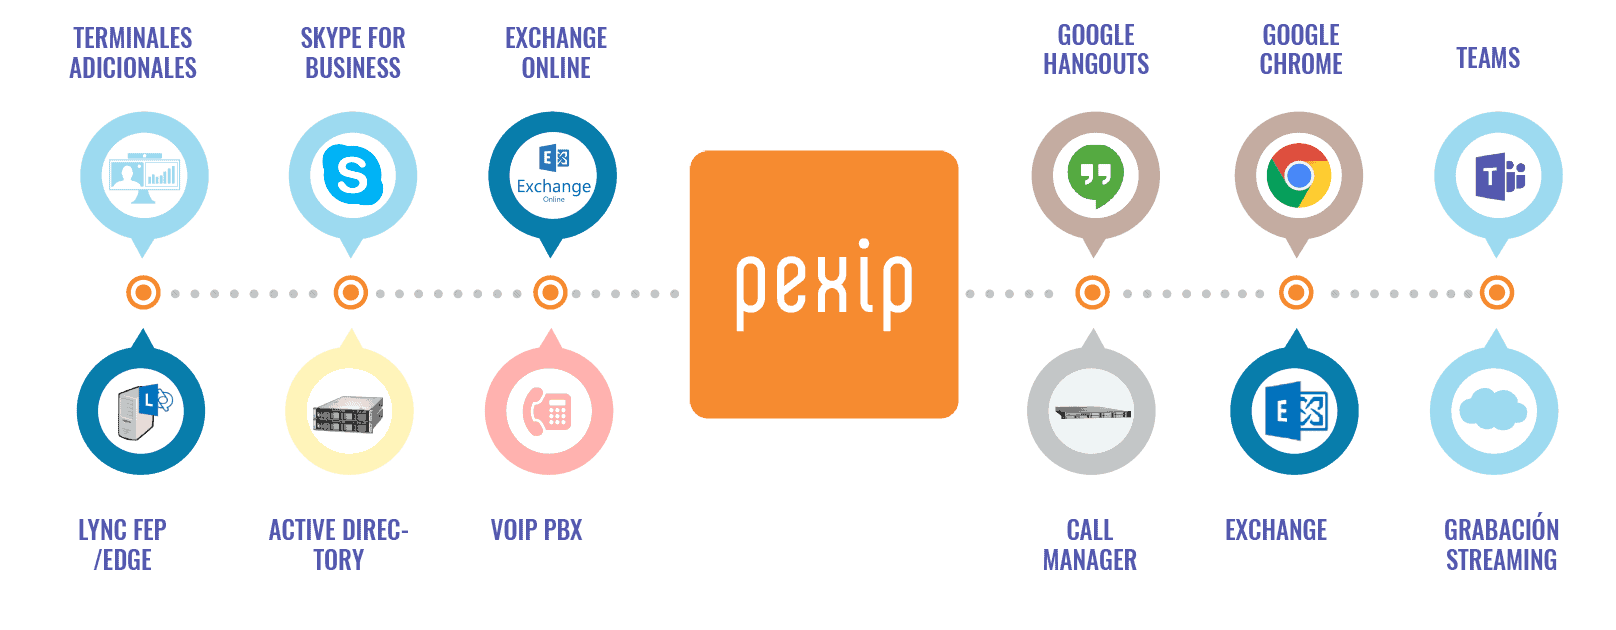 Pexip | Integre sus equipos de videoconferencia con Microsoft Teams y Google Meet